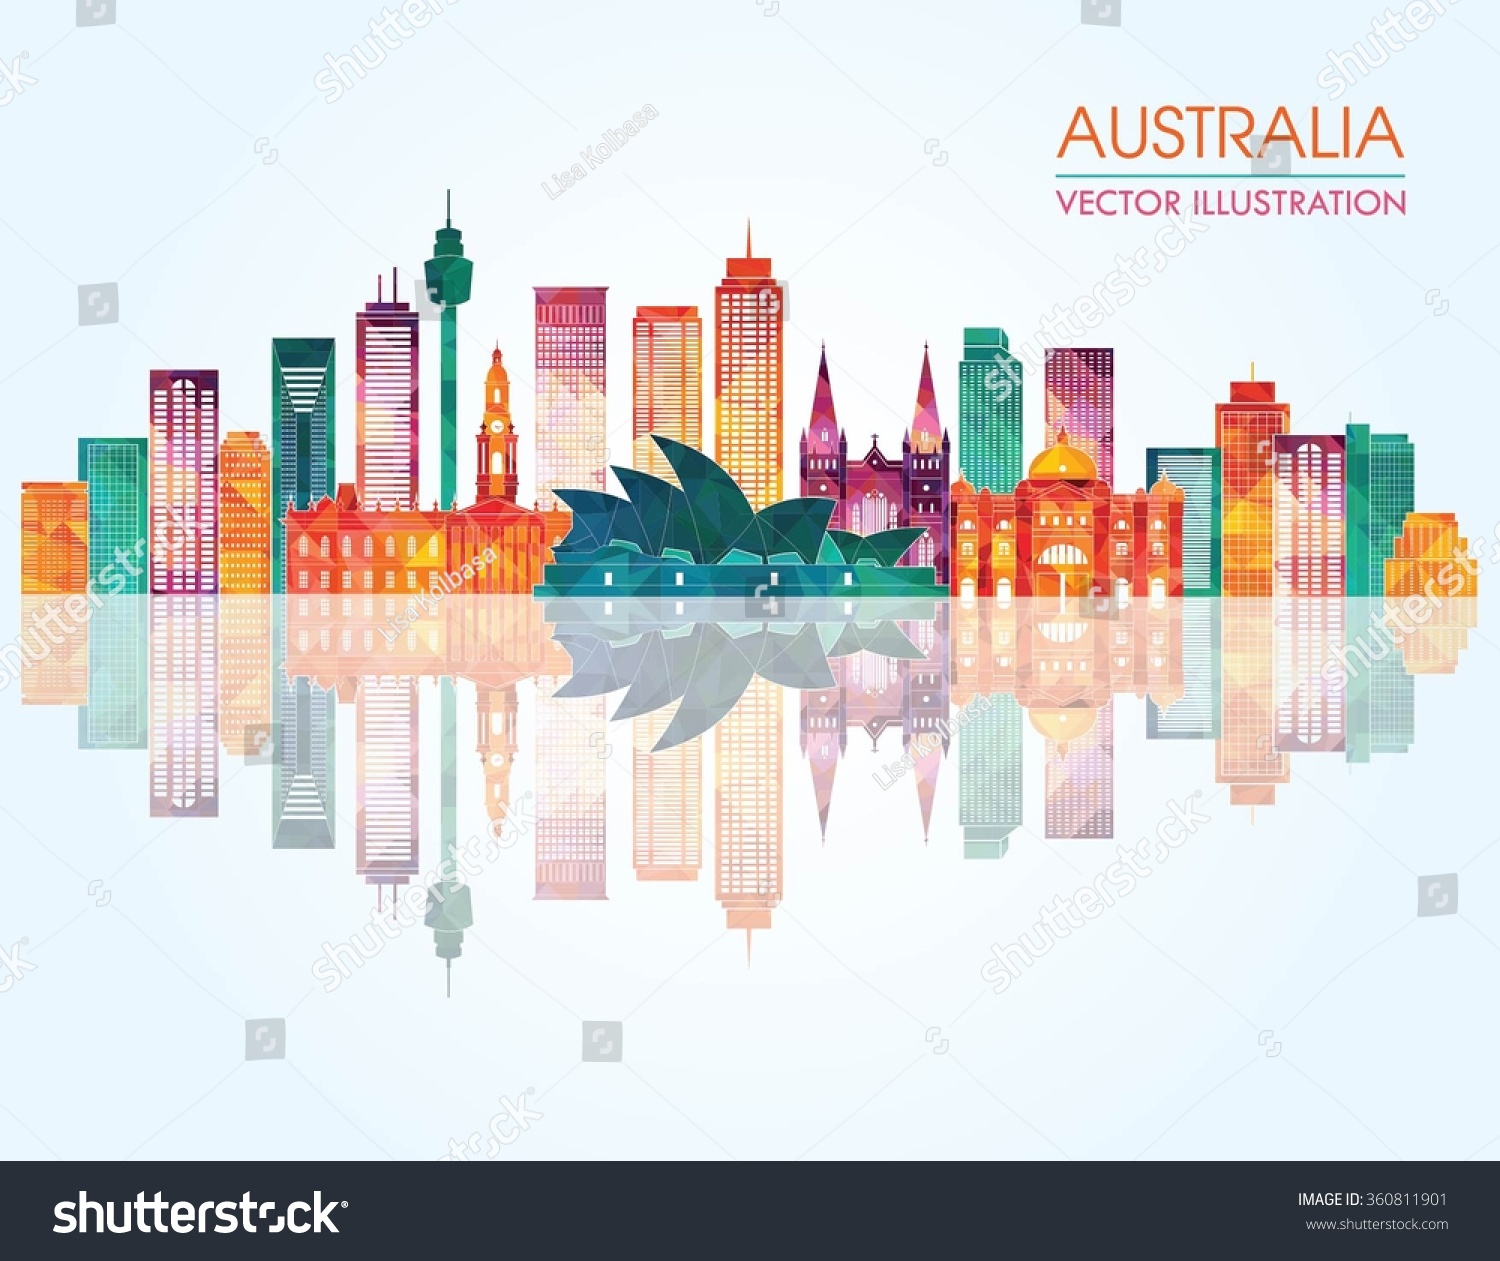 Travel Australia Famous Landmarks Skyline Vector Stock Vector 360811901 - Shutterstock1500 x 1261